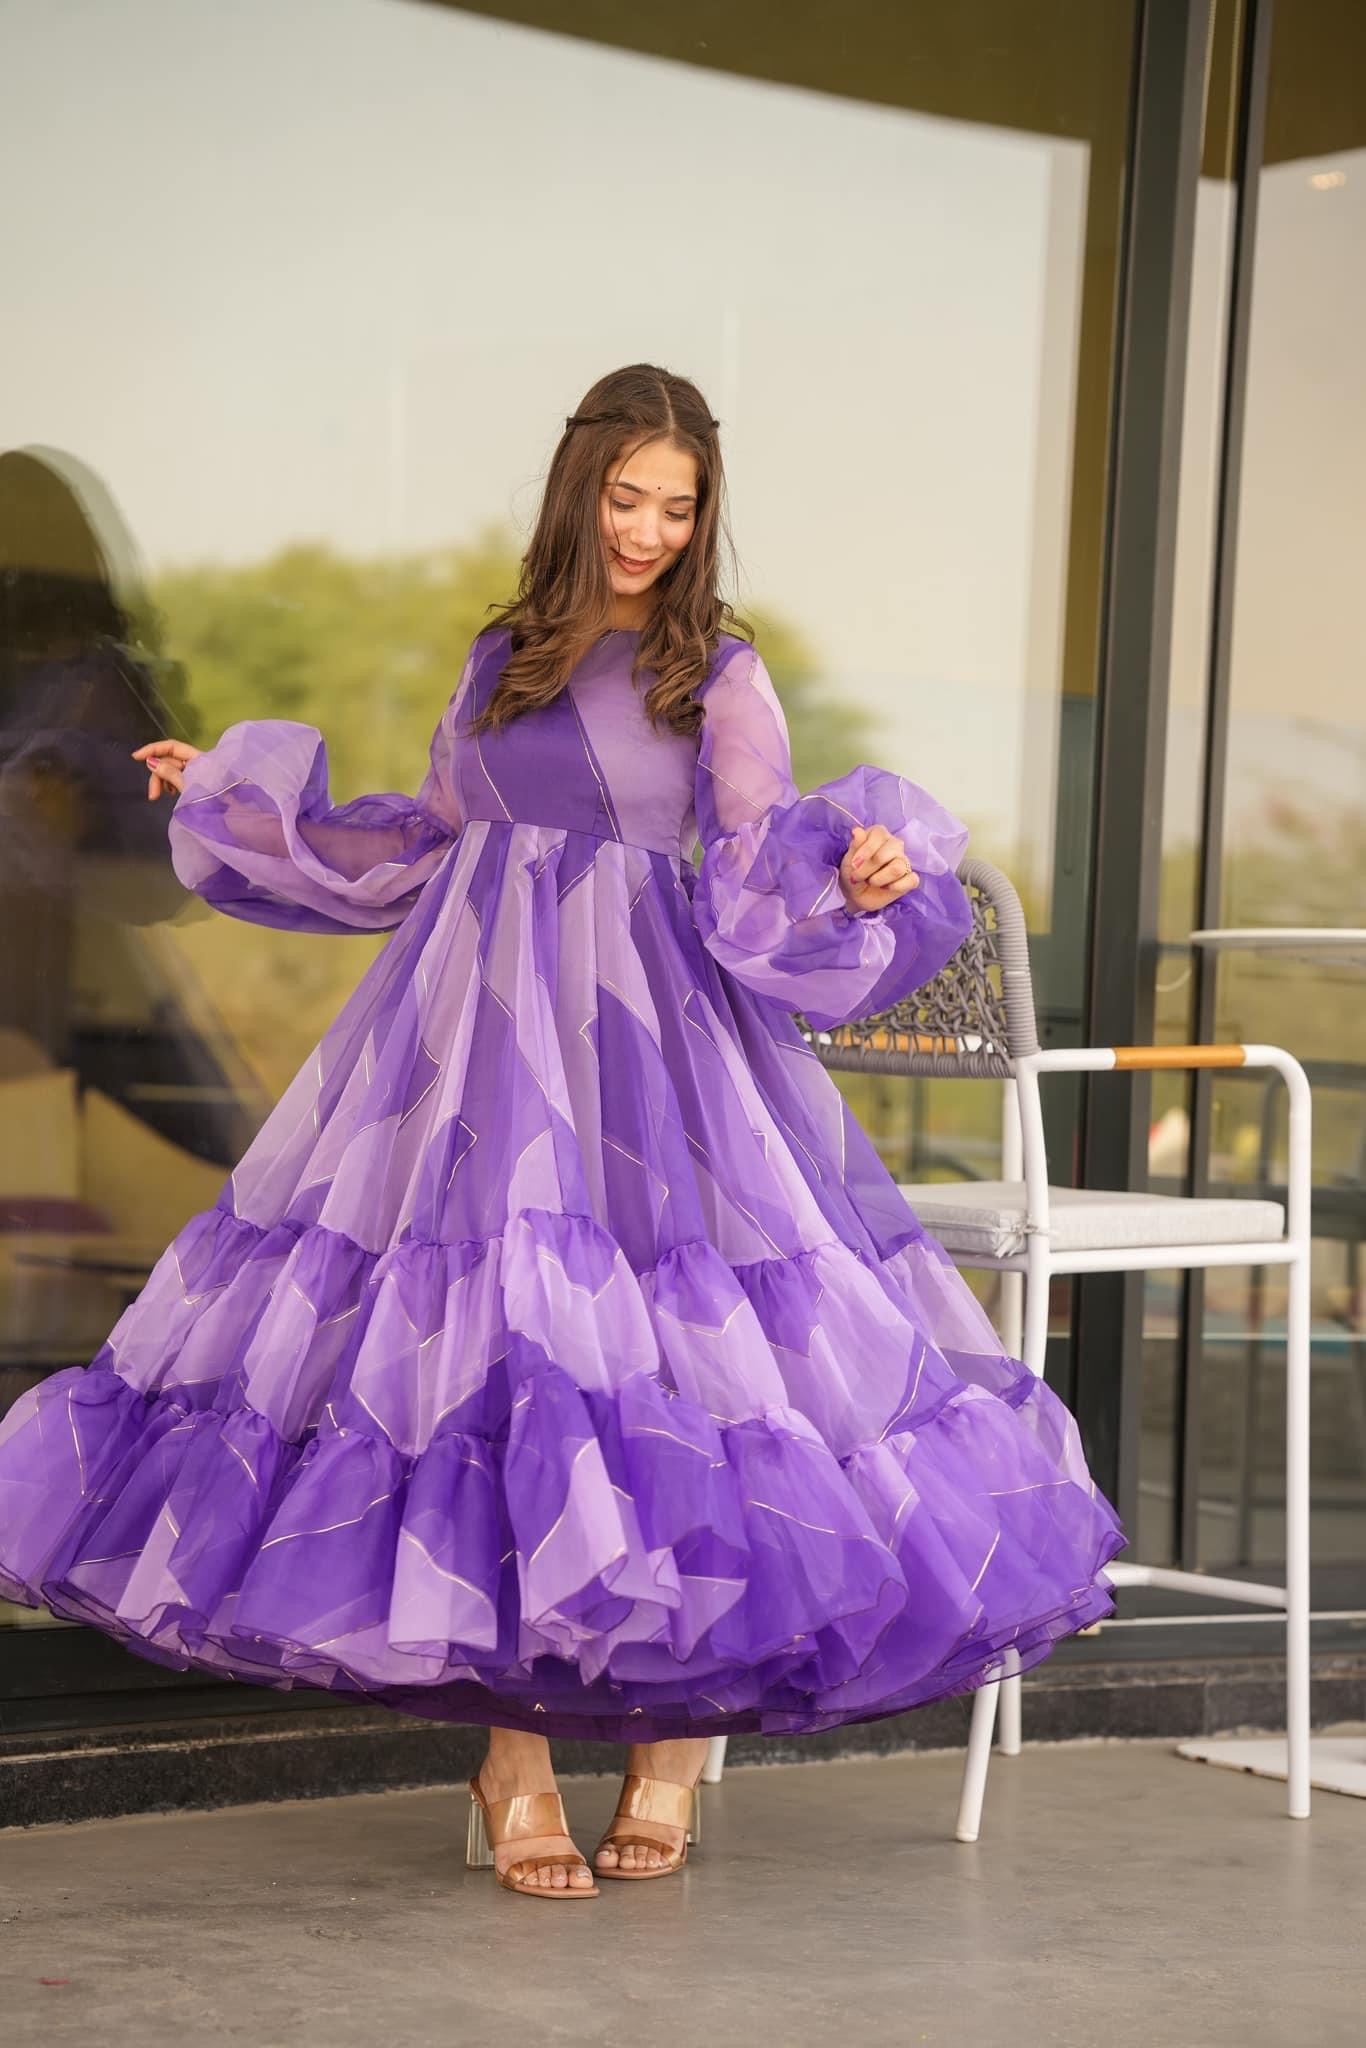 Rhaenyra - purple dress by FilFantAIsies on DeviantArt